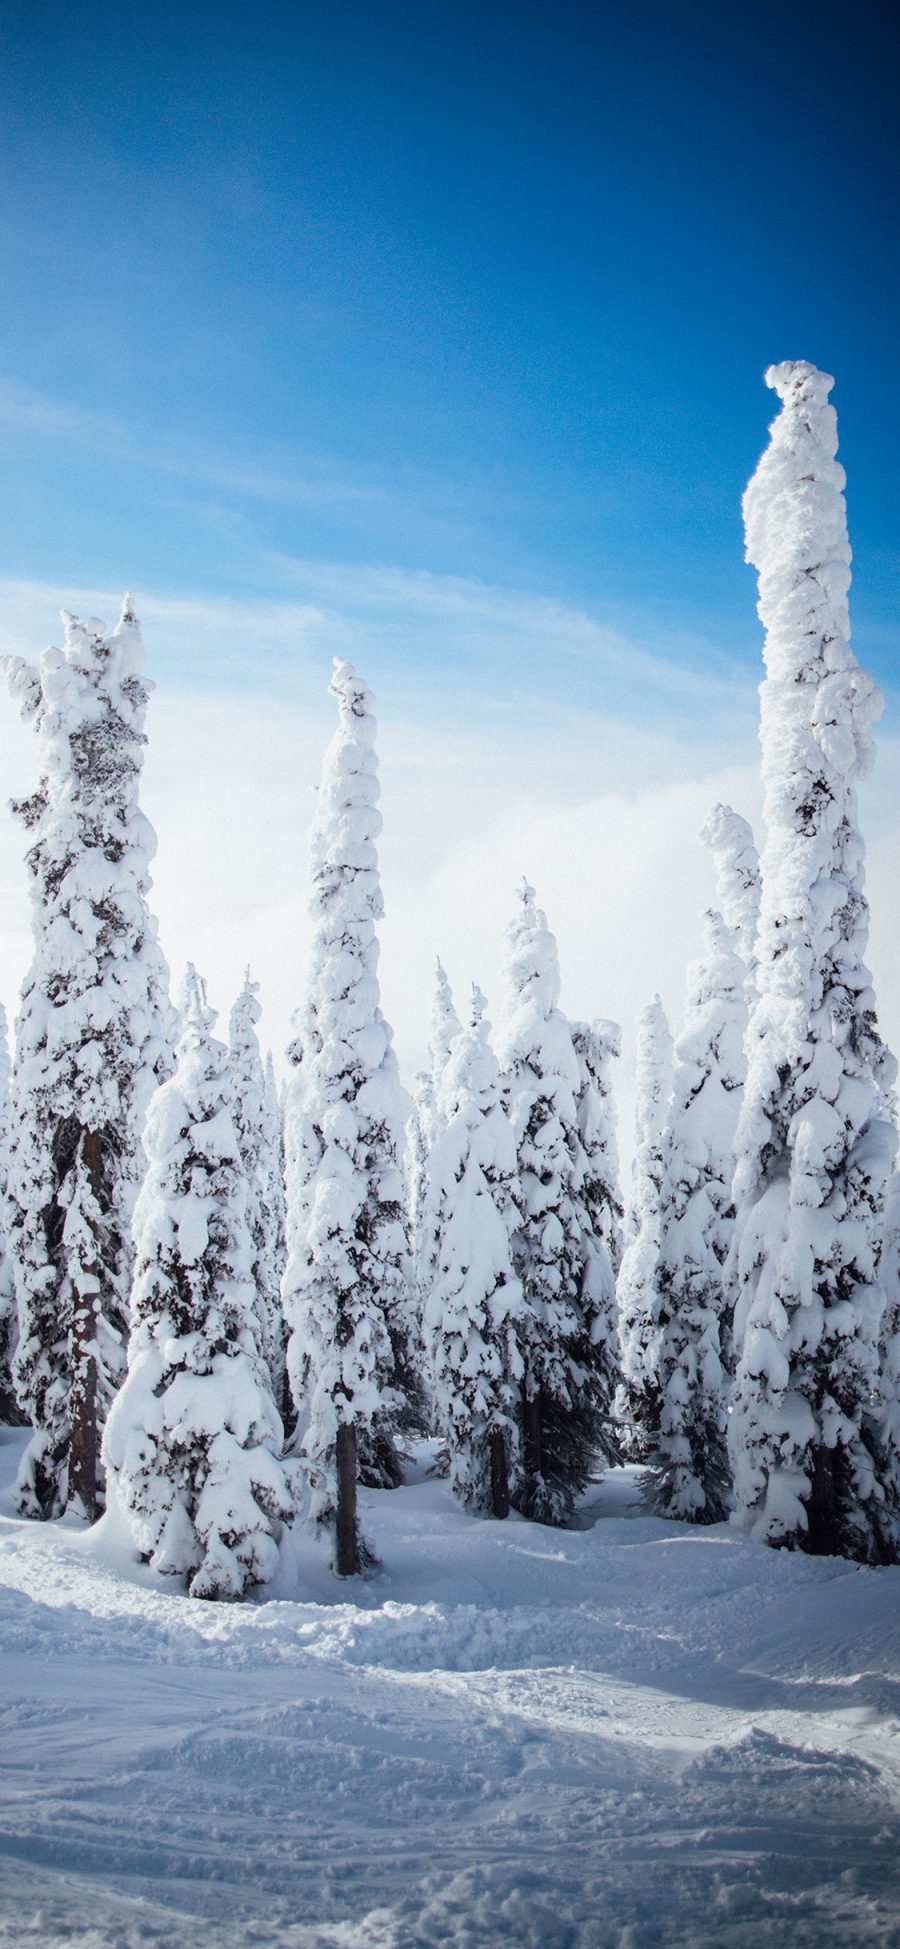 2436 1125 冬季雪景树木唯美苹果手机壁纸图片 全面屏手机壁纸